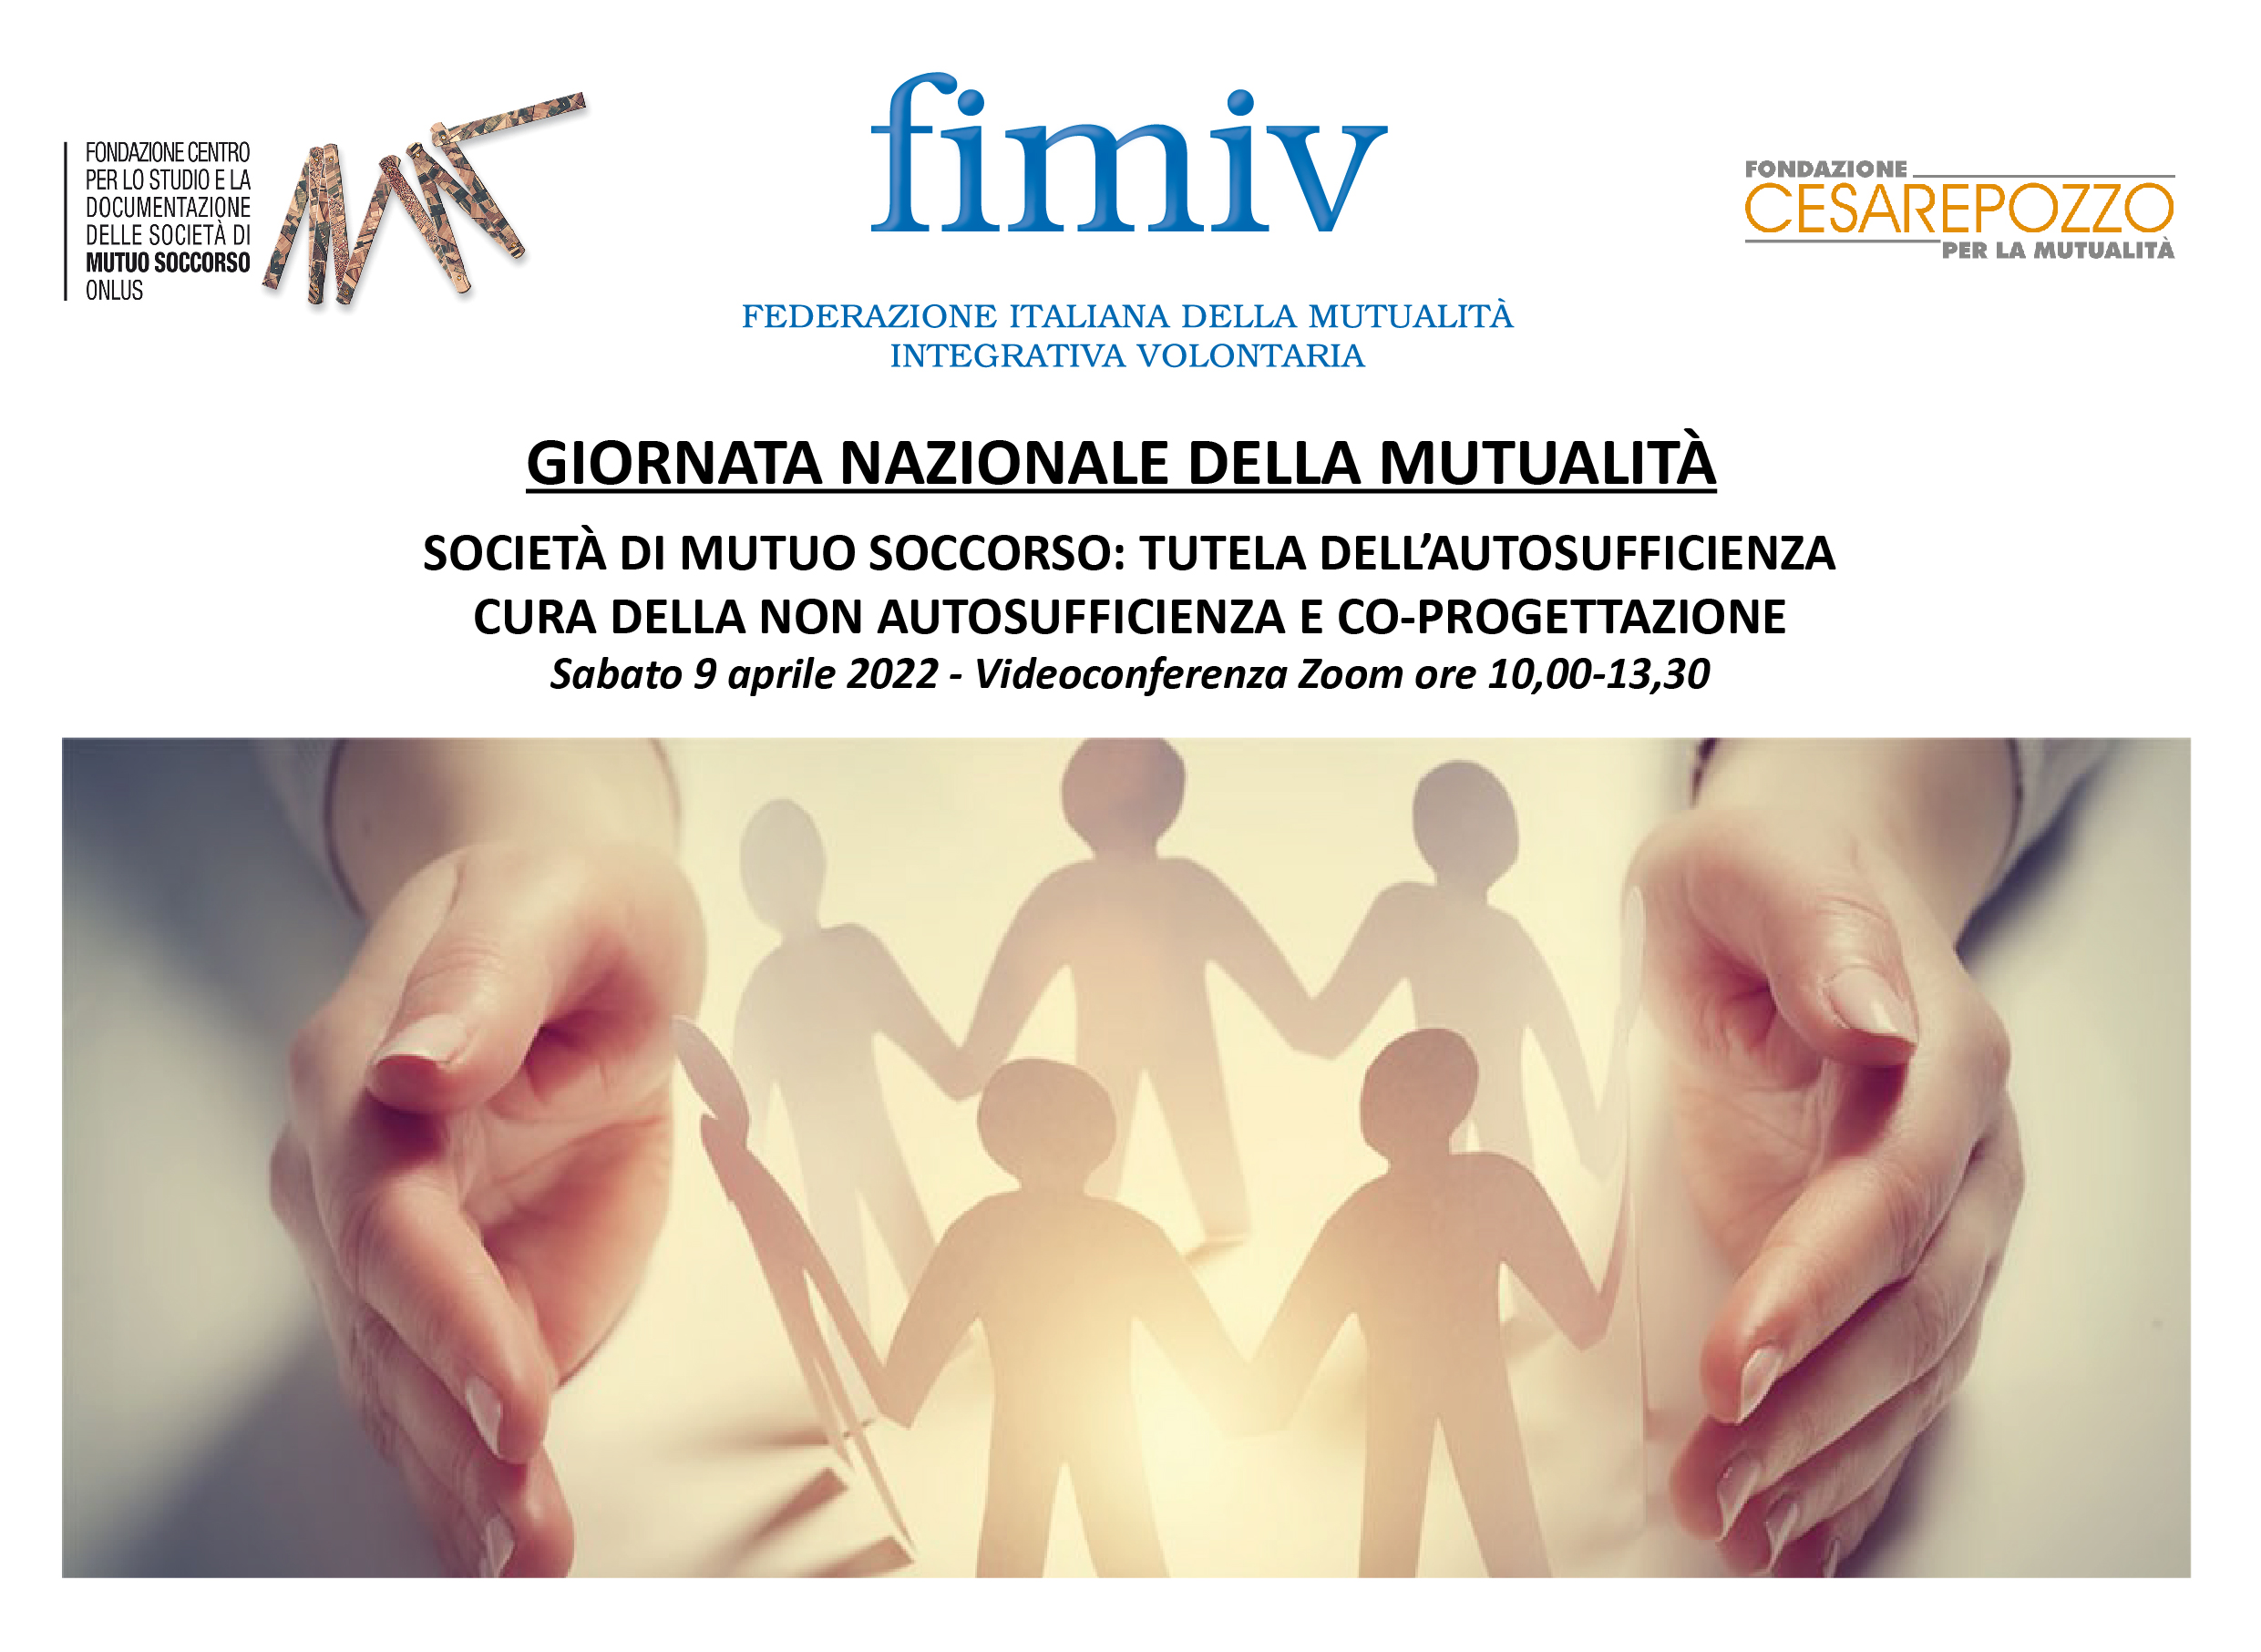 Giornata nazionale della Mutualità: sabato 9 aprile una videoconferenza di FIMIV dedicata al mutuo soccorso